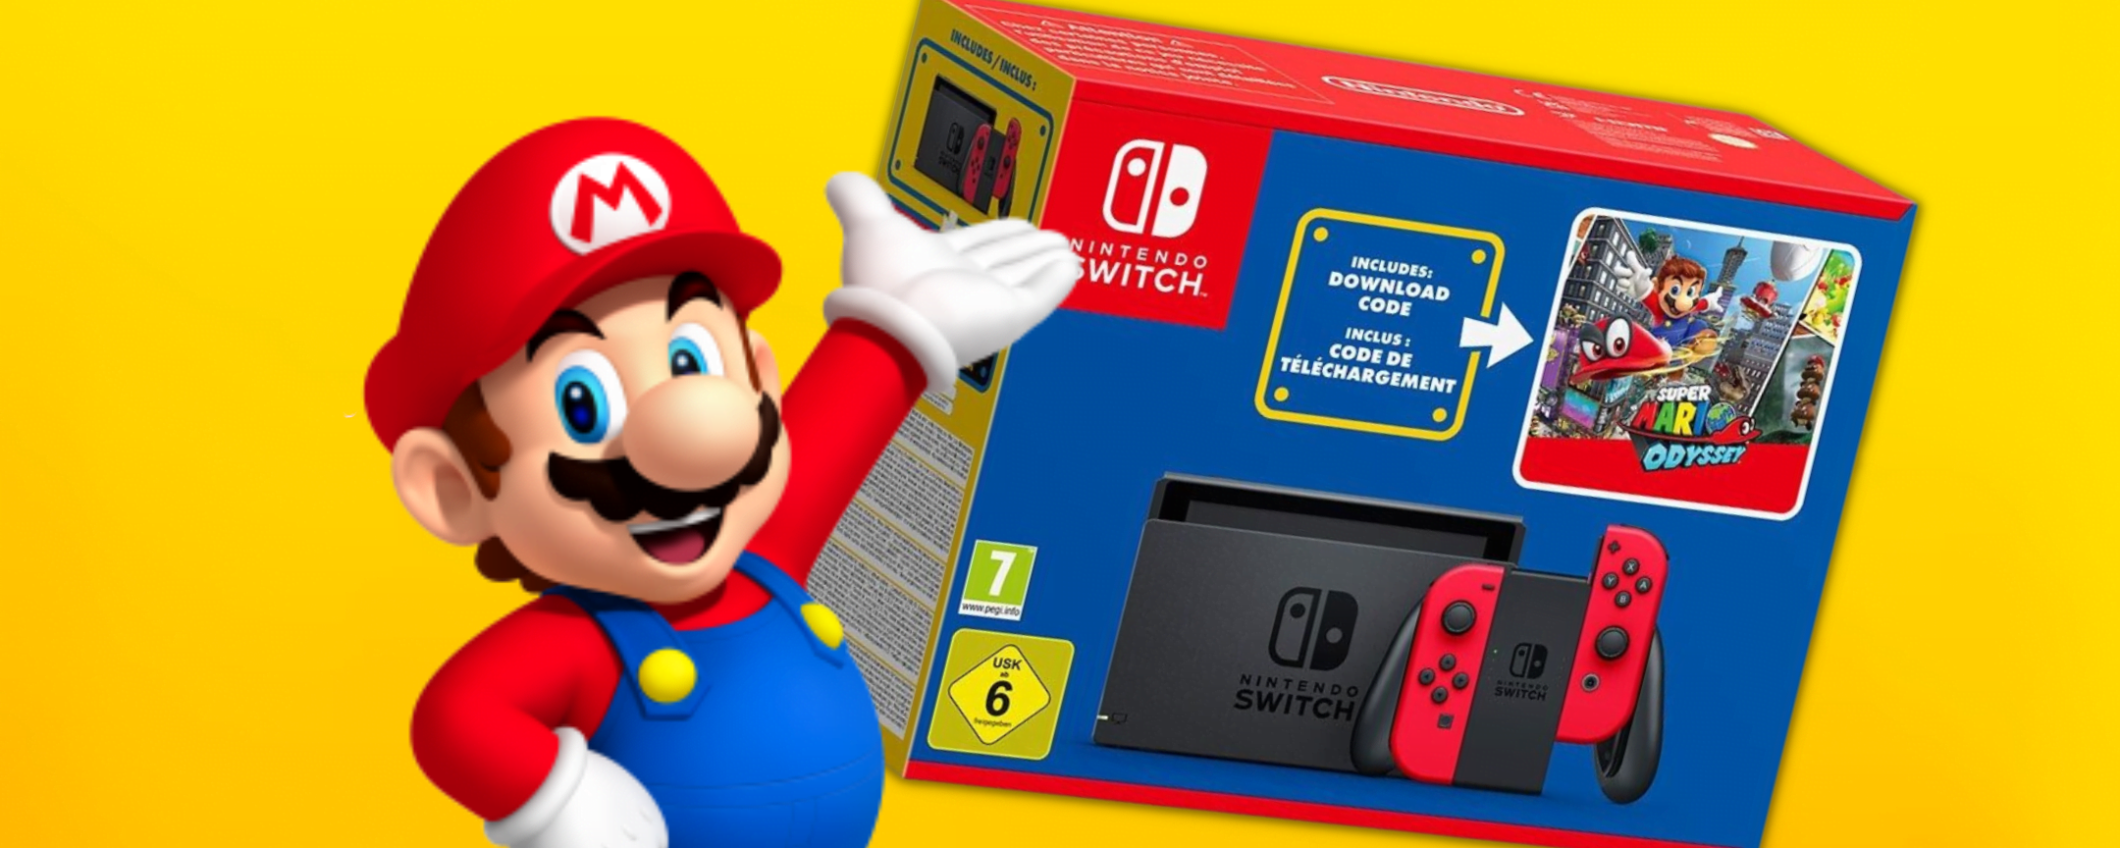 Nintendo Switch e Super Mario Odyssey: la coppia vincente in sconto